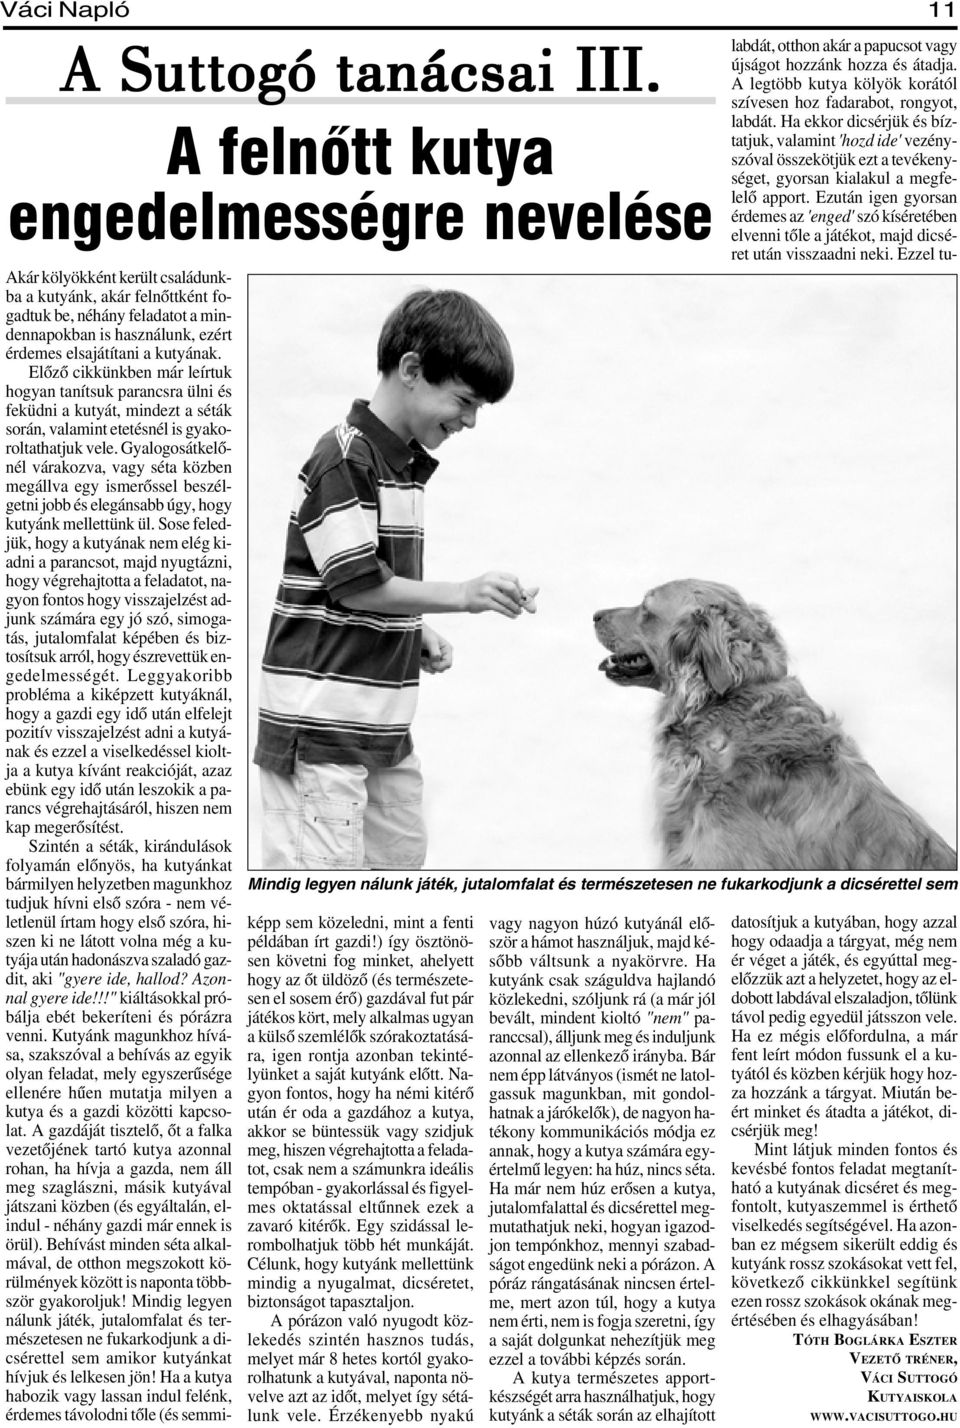 kutyának. Elõzõ cikkünkben már leírtuk hogyan tanítsuk parancsra ülni és feküdni a kutyát, mindezt a séták során, valamint etetésnél is gyakoroltathatjuk vele.